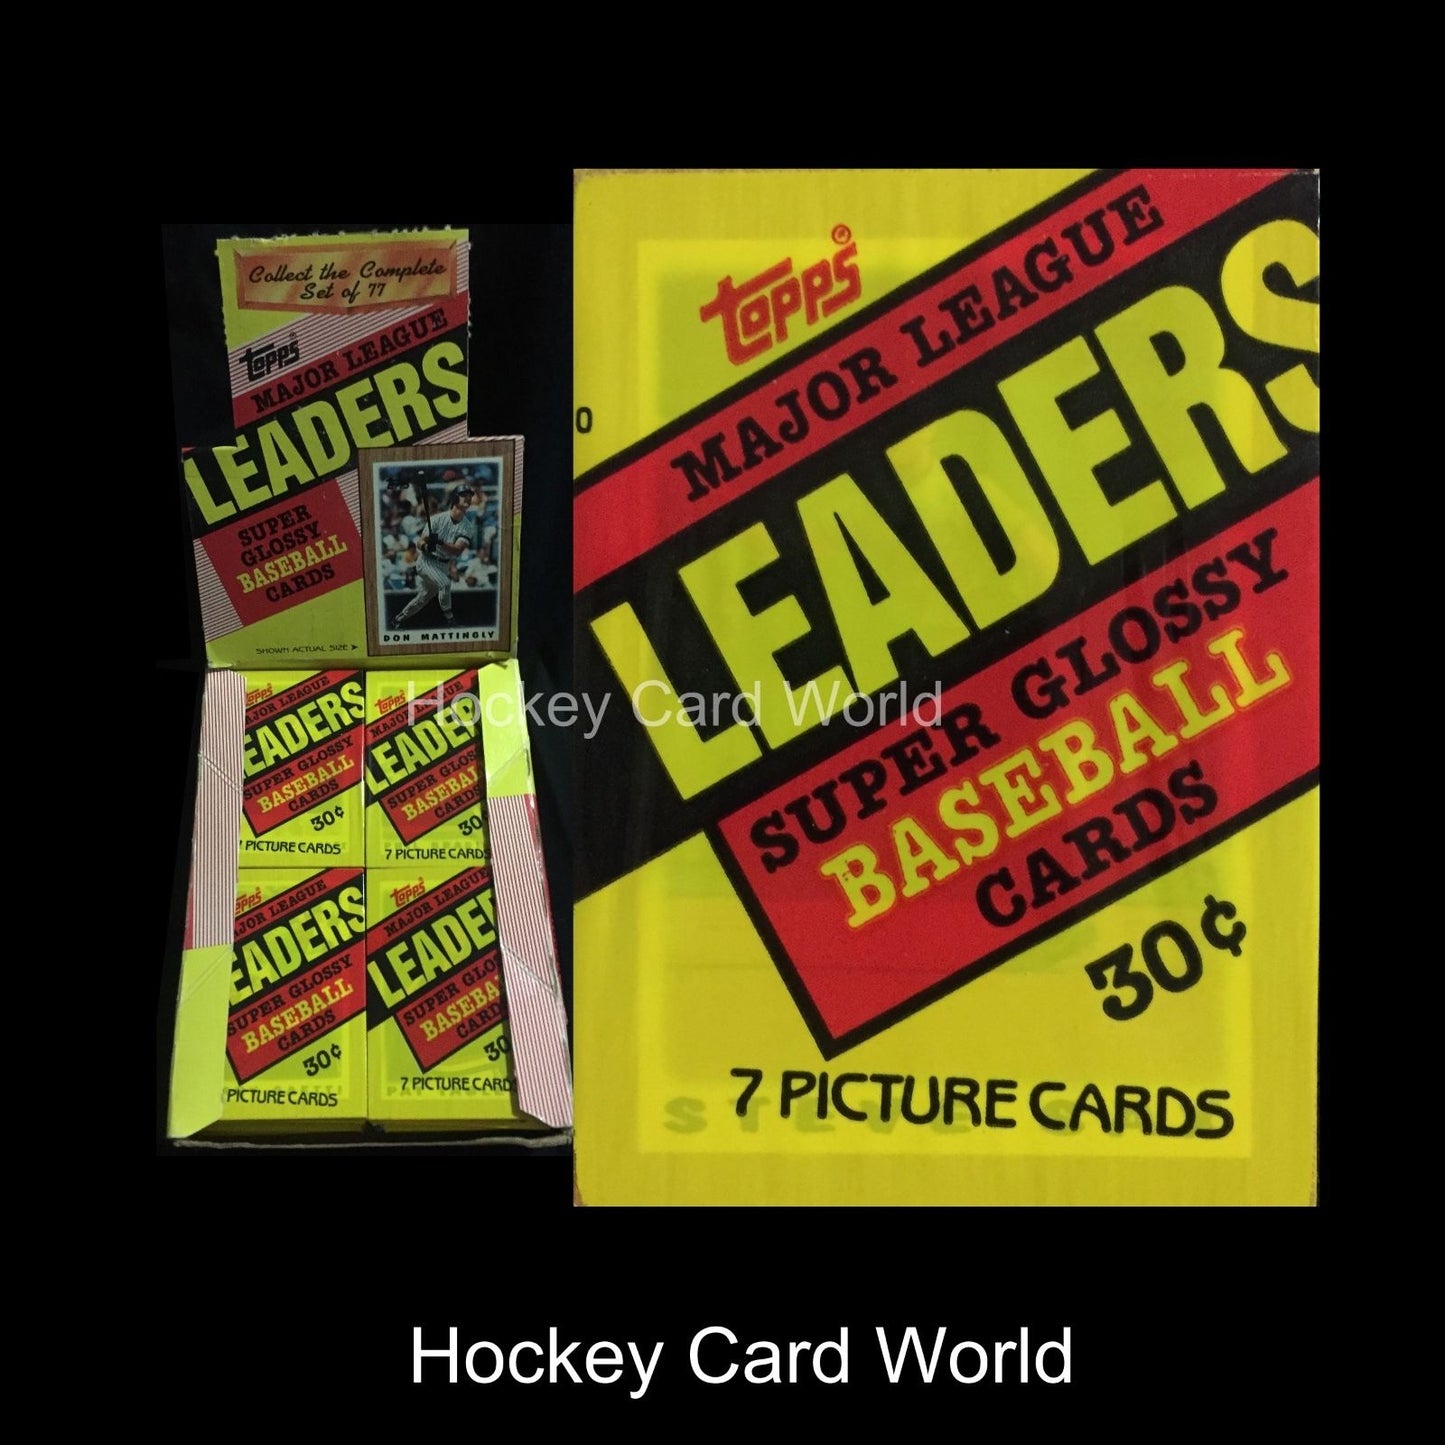  1987 Baseball Mini Leaders Super Glossy Hobby Card Pack - 7 Card Pack Image 1